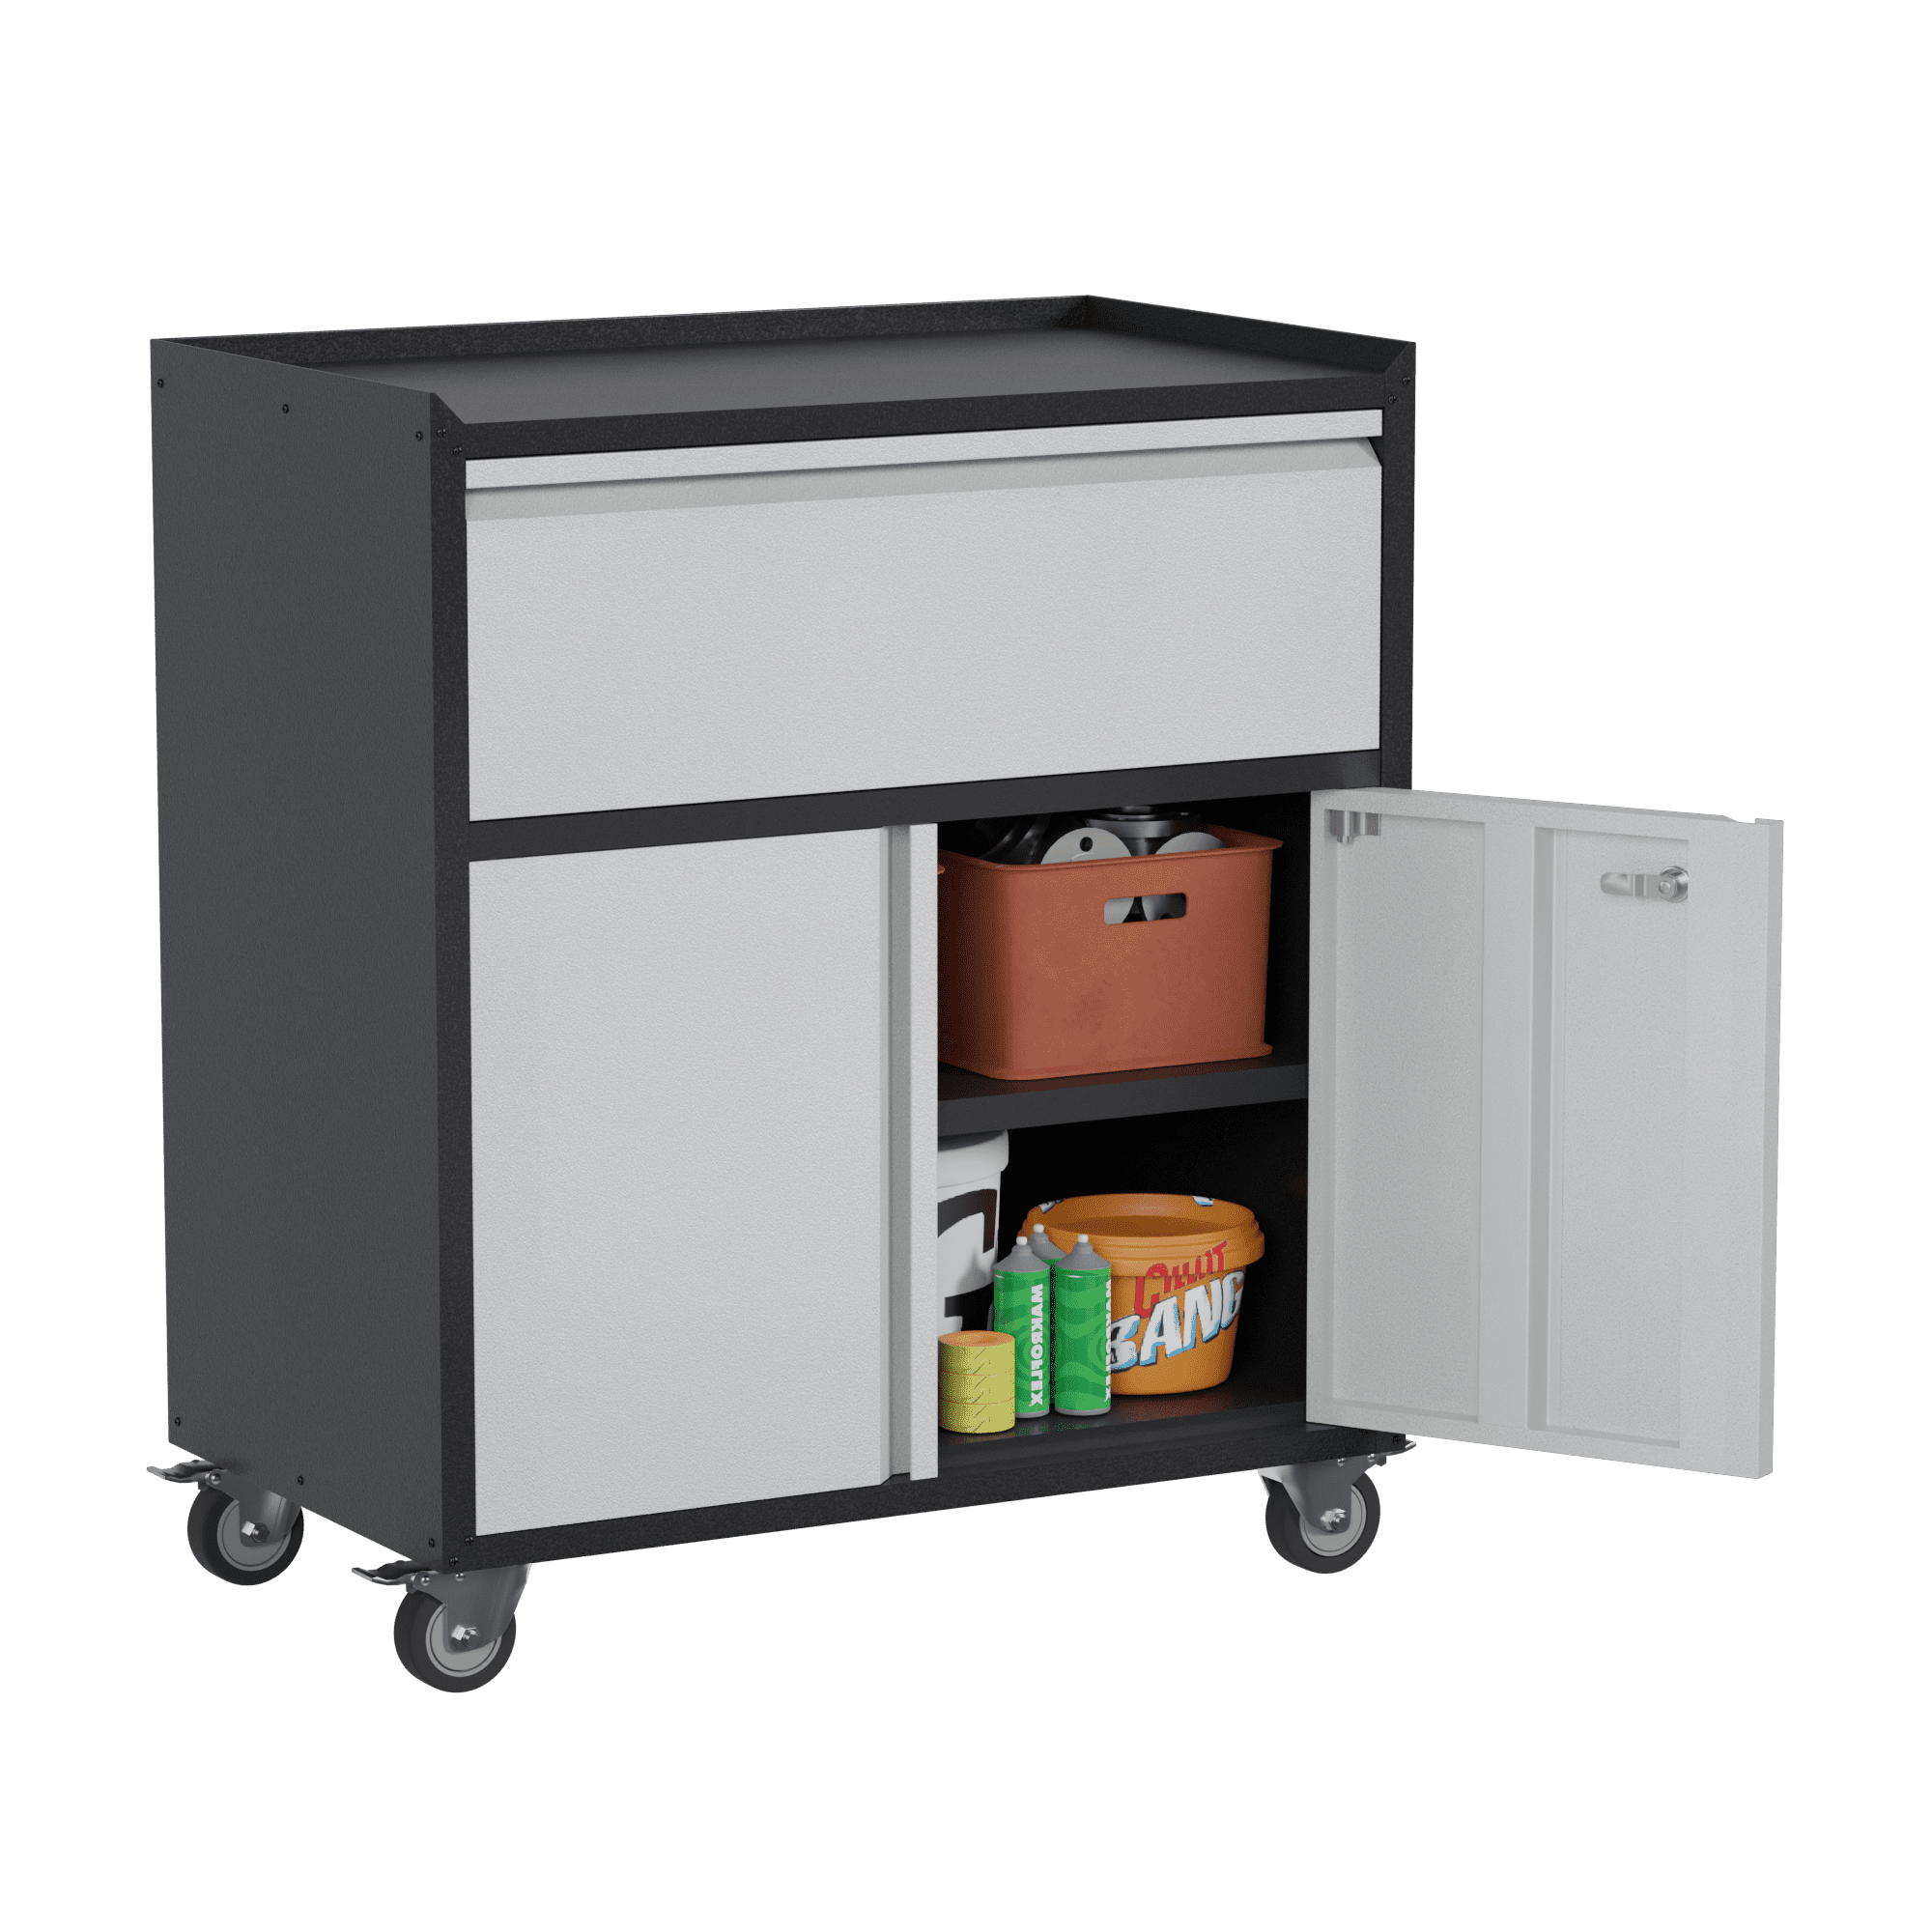 Garage Storage Cabinet